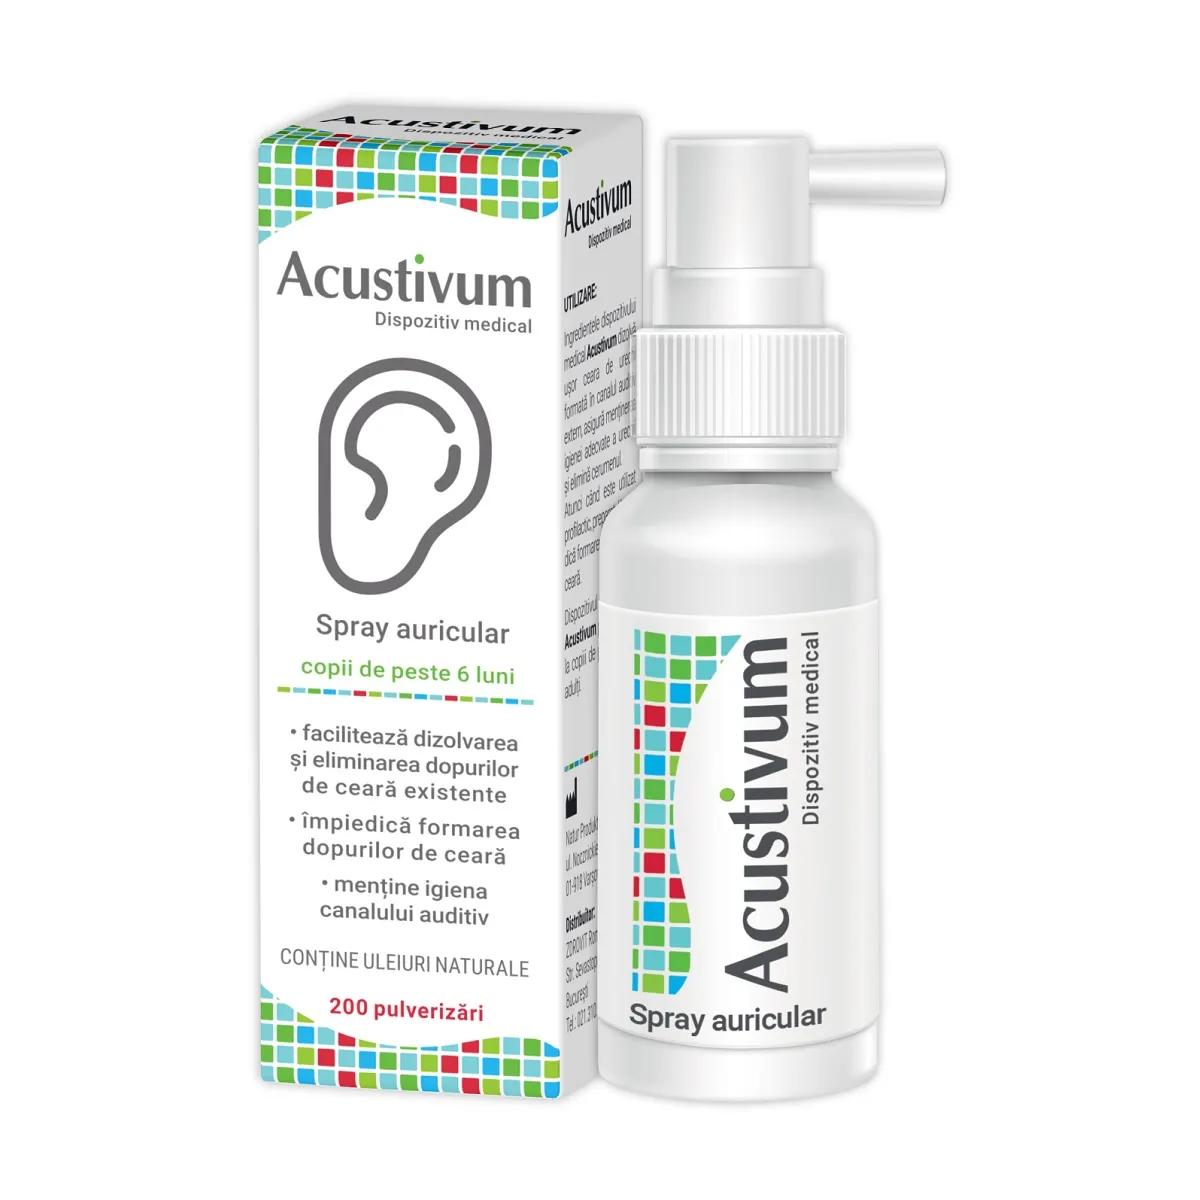 Spray auricular Acustivum, 20ml, Zdrovit